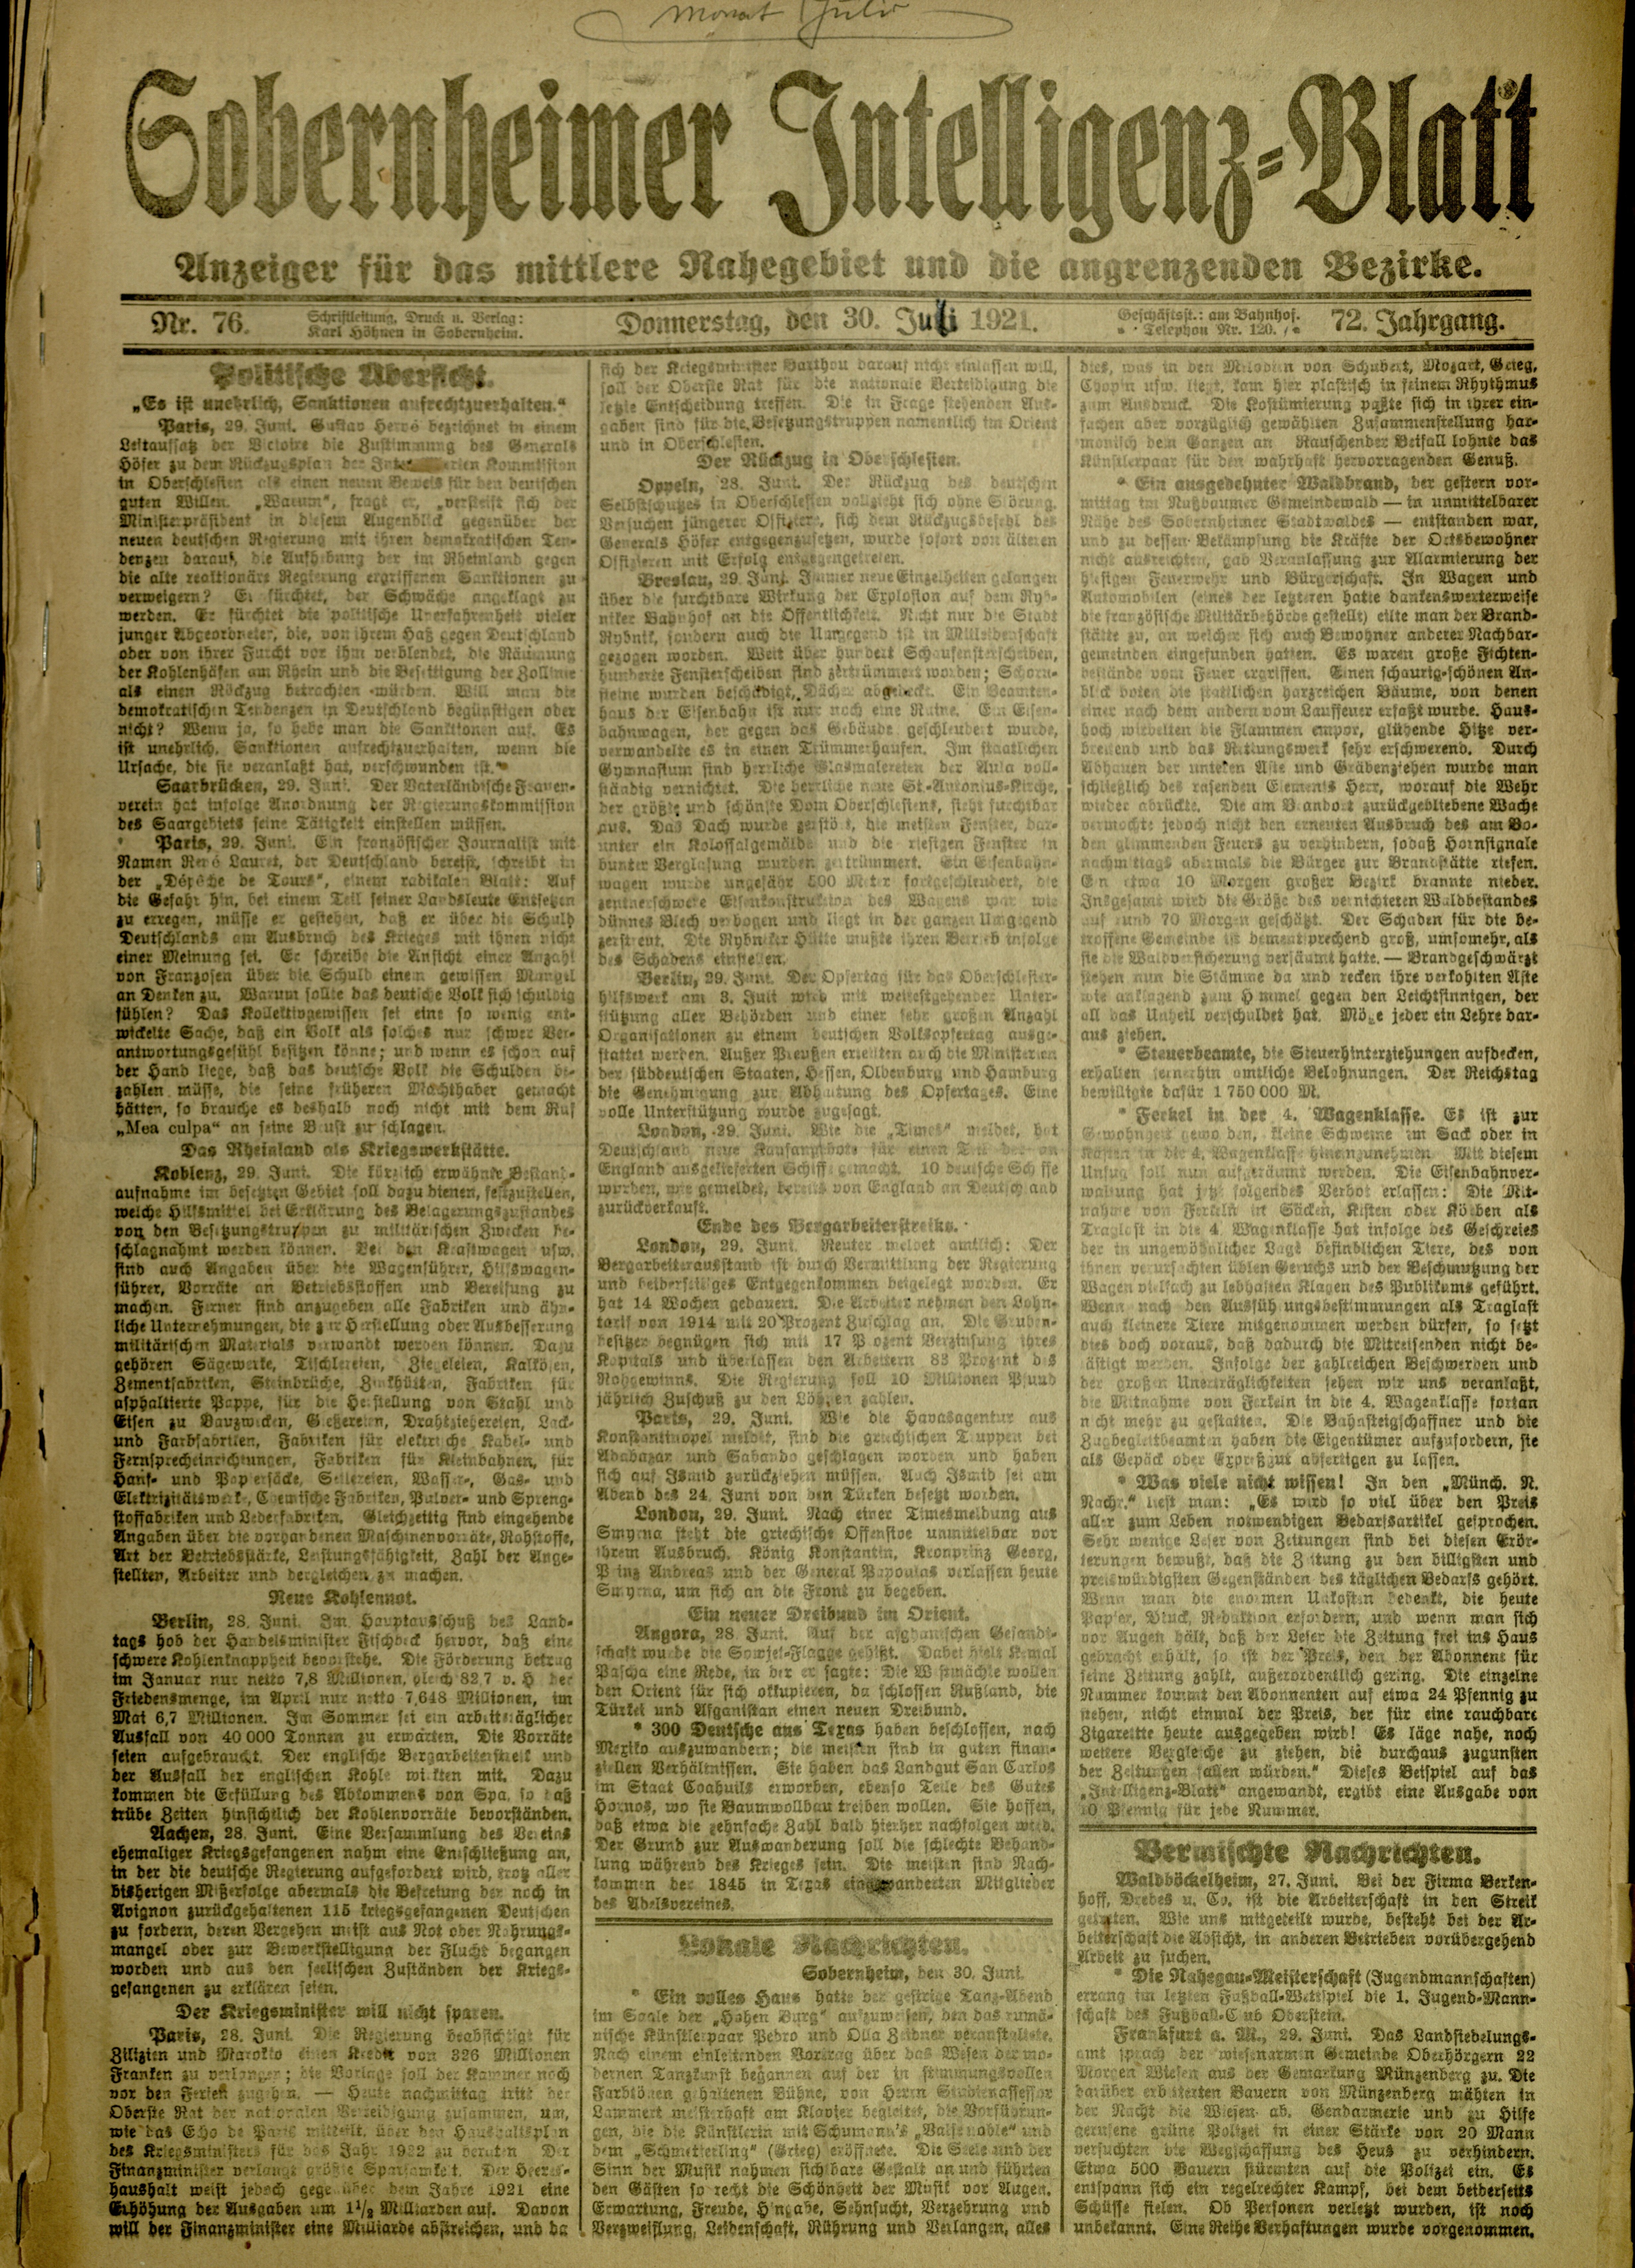 Zeitung: Sobernheimer Intelligenzblatt; Juli 1921, Jg. 72 Nr. 67 (Heimatmuseum Bad Sobernheim CC BY-NC-SA)